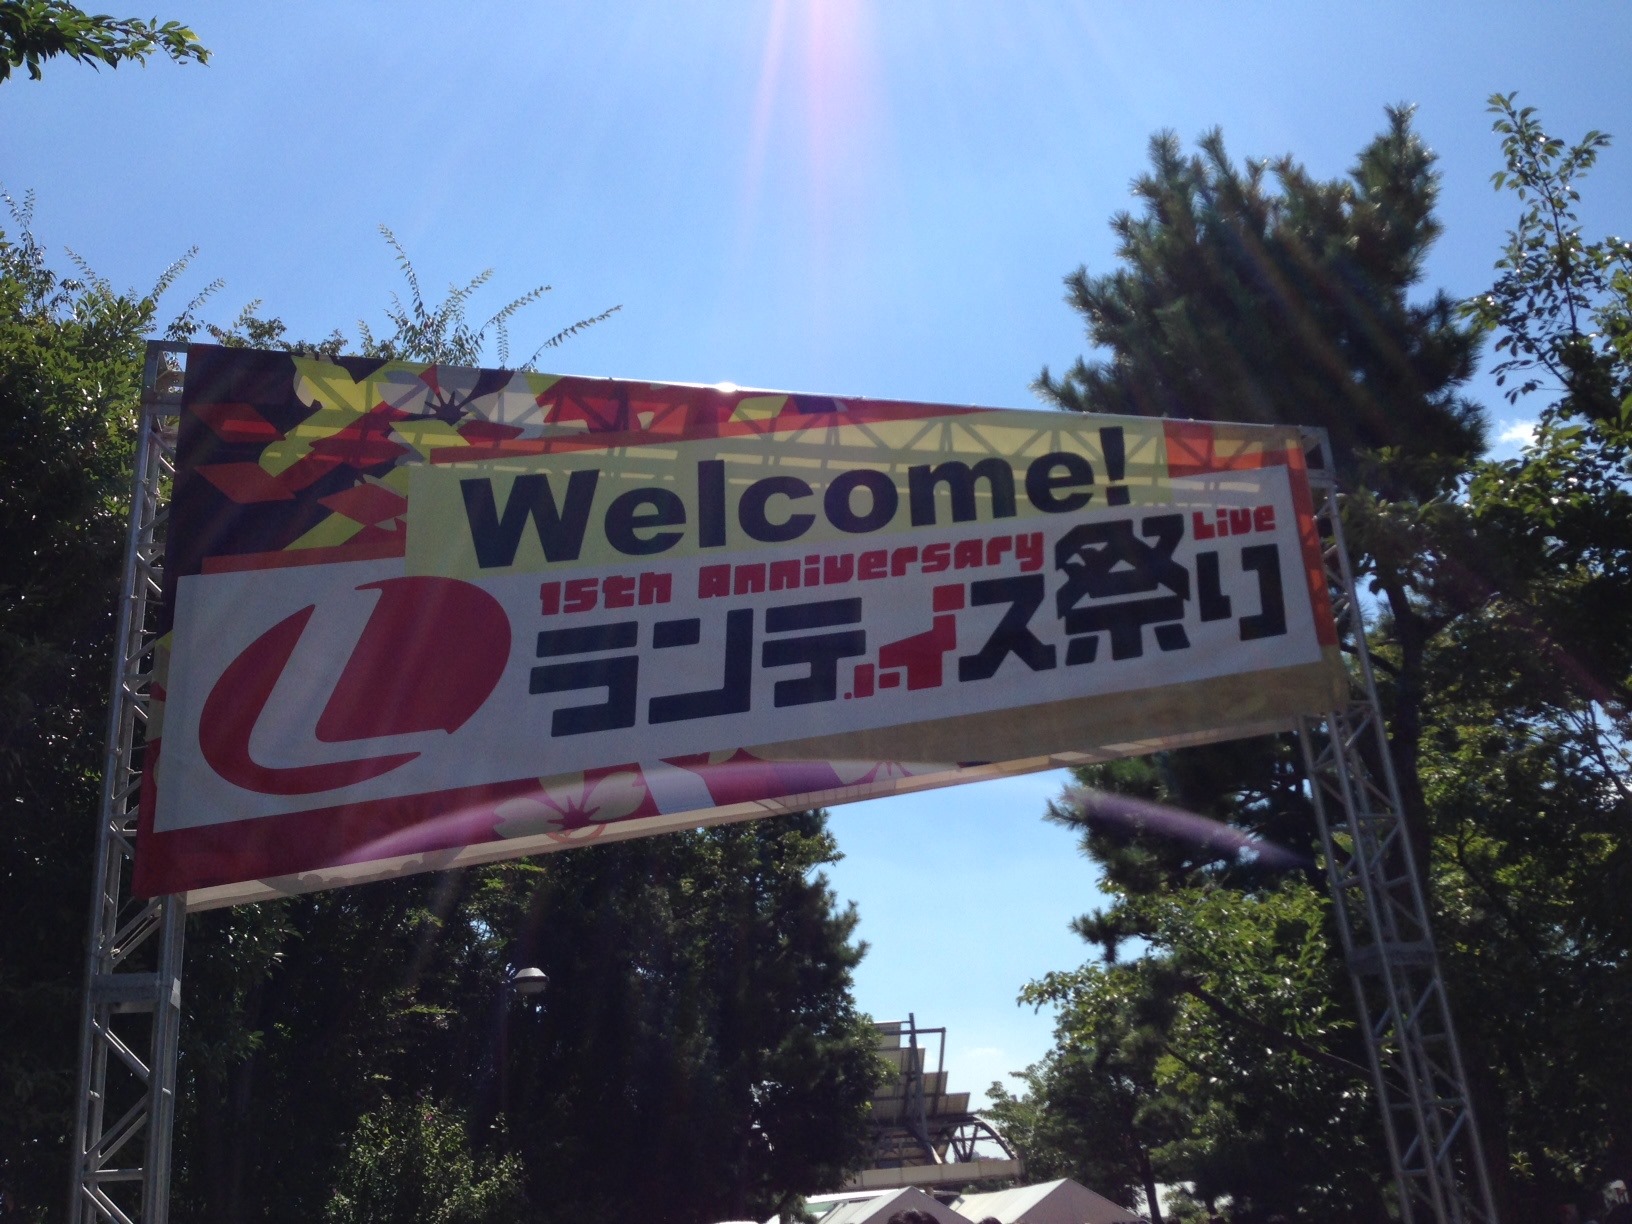 ランティス祭り 2014 関東 セットリスト＆レポート (Air-be blog)